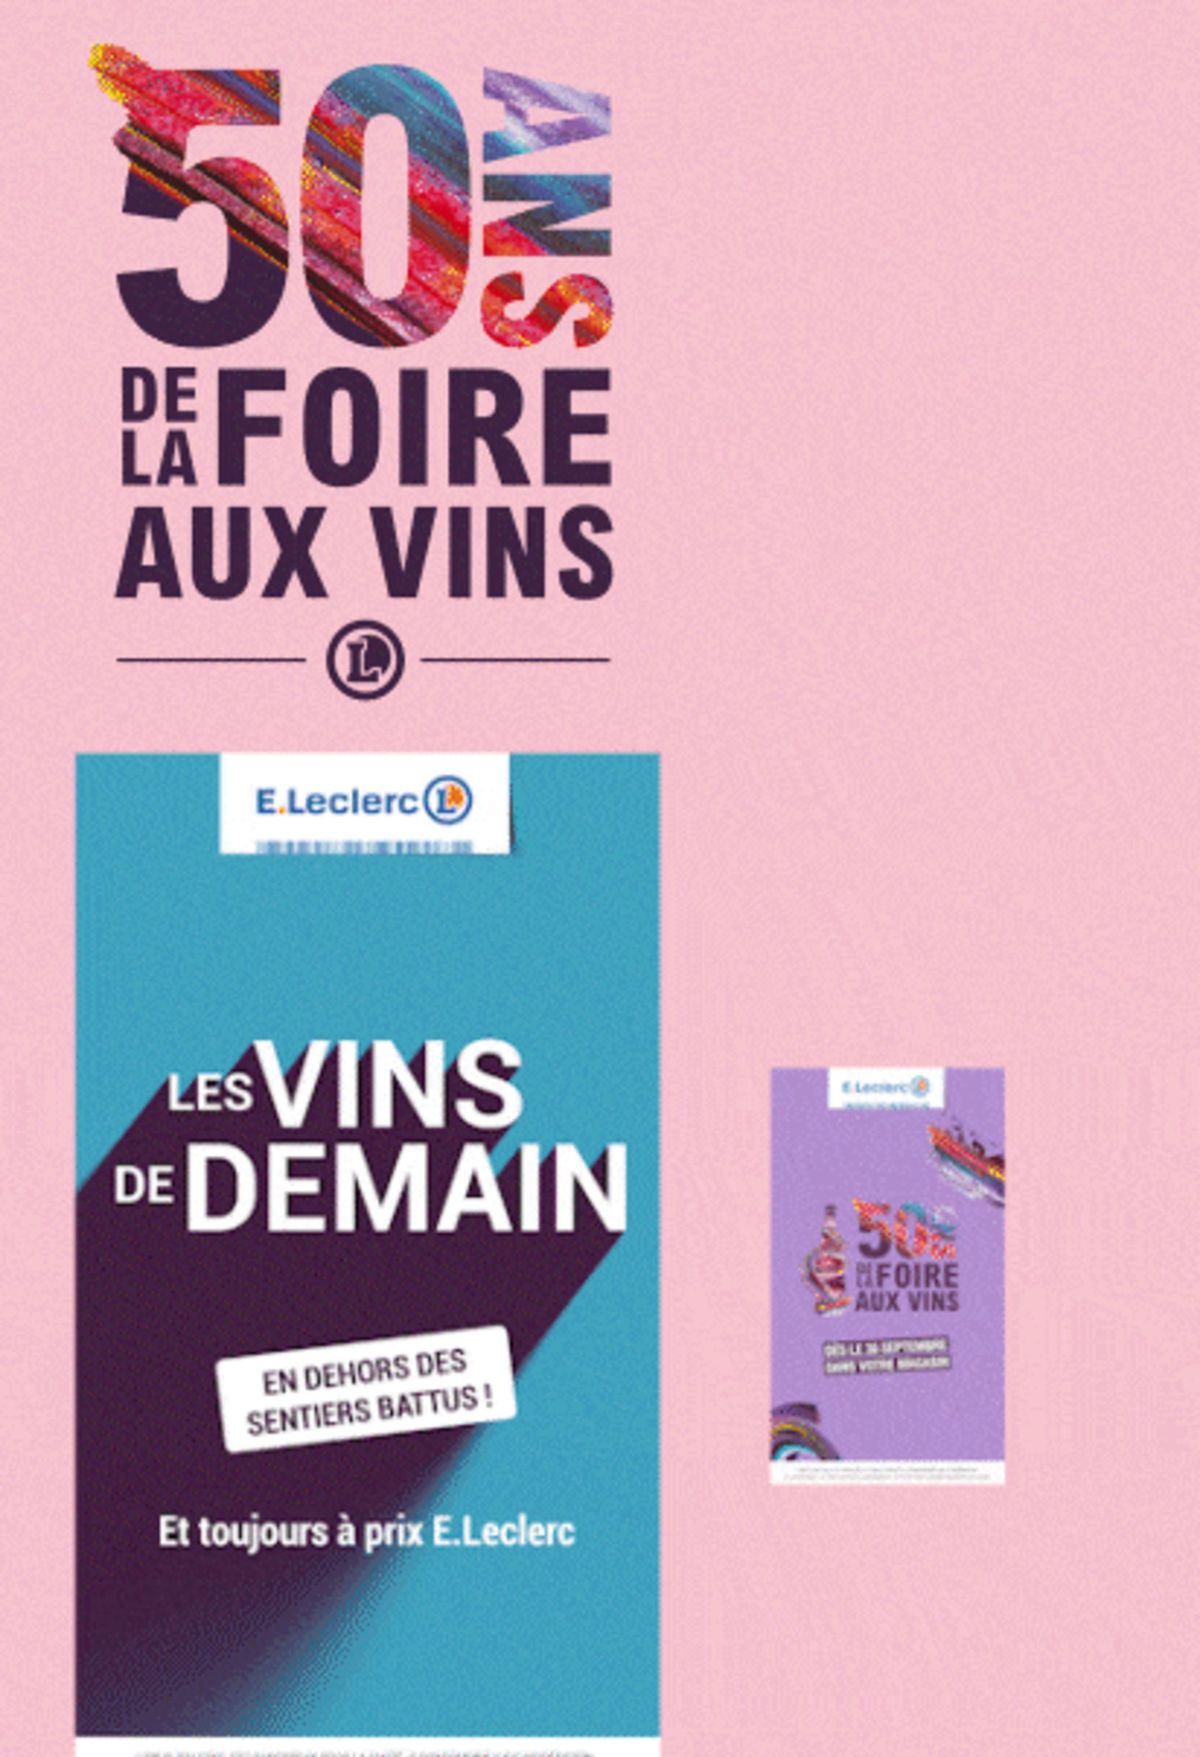 Catalogue Foire Aux Vins - Mixte, page 01201